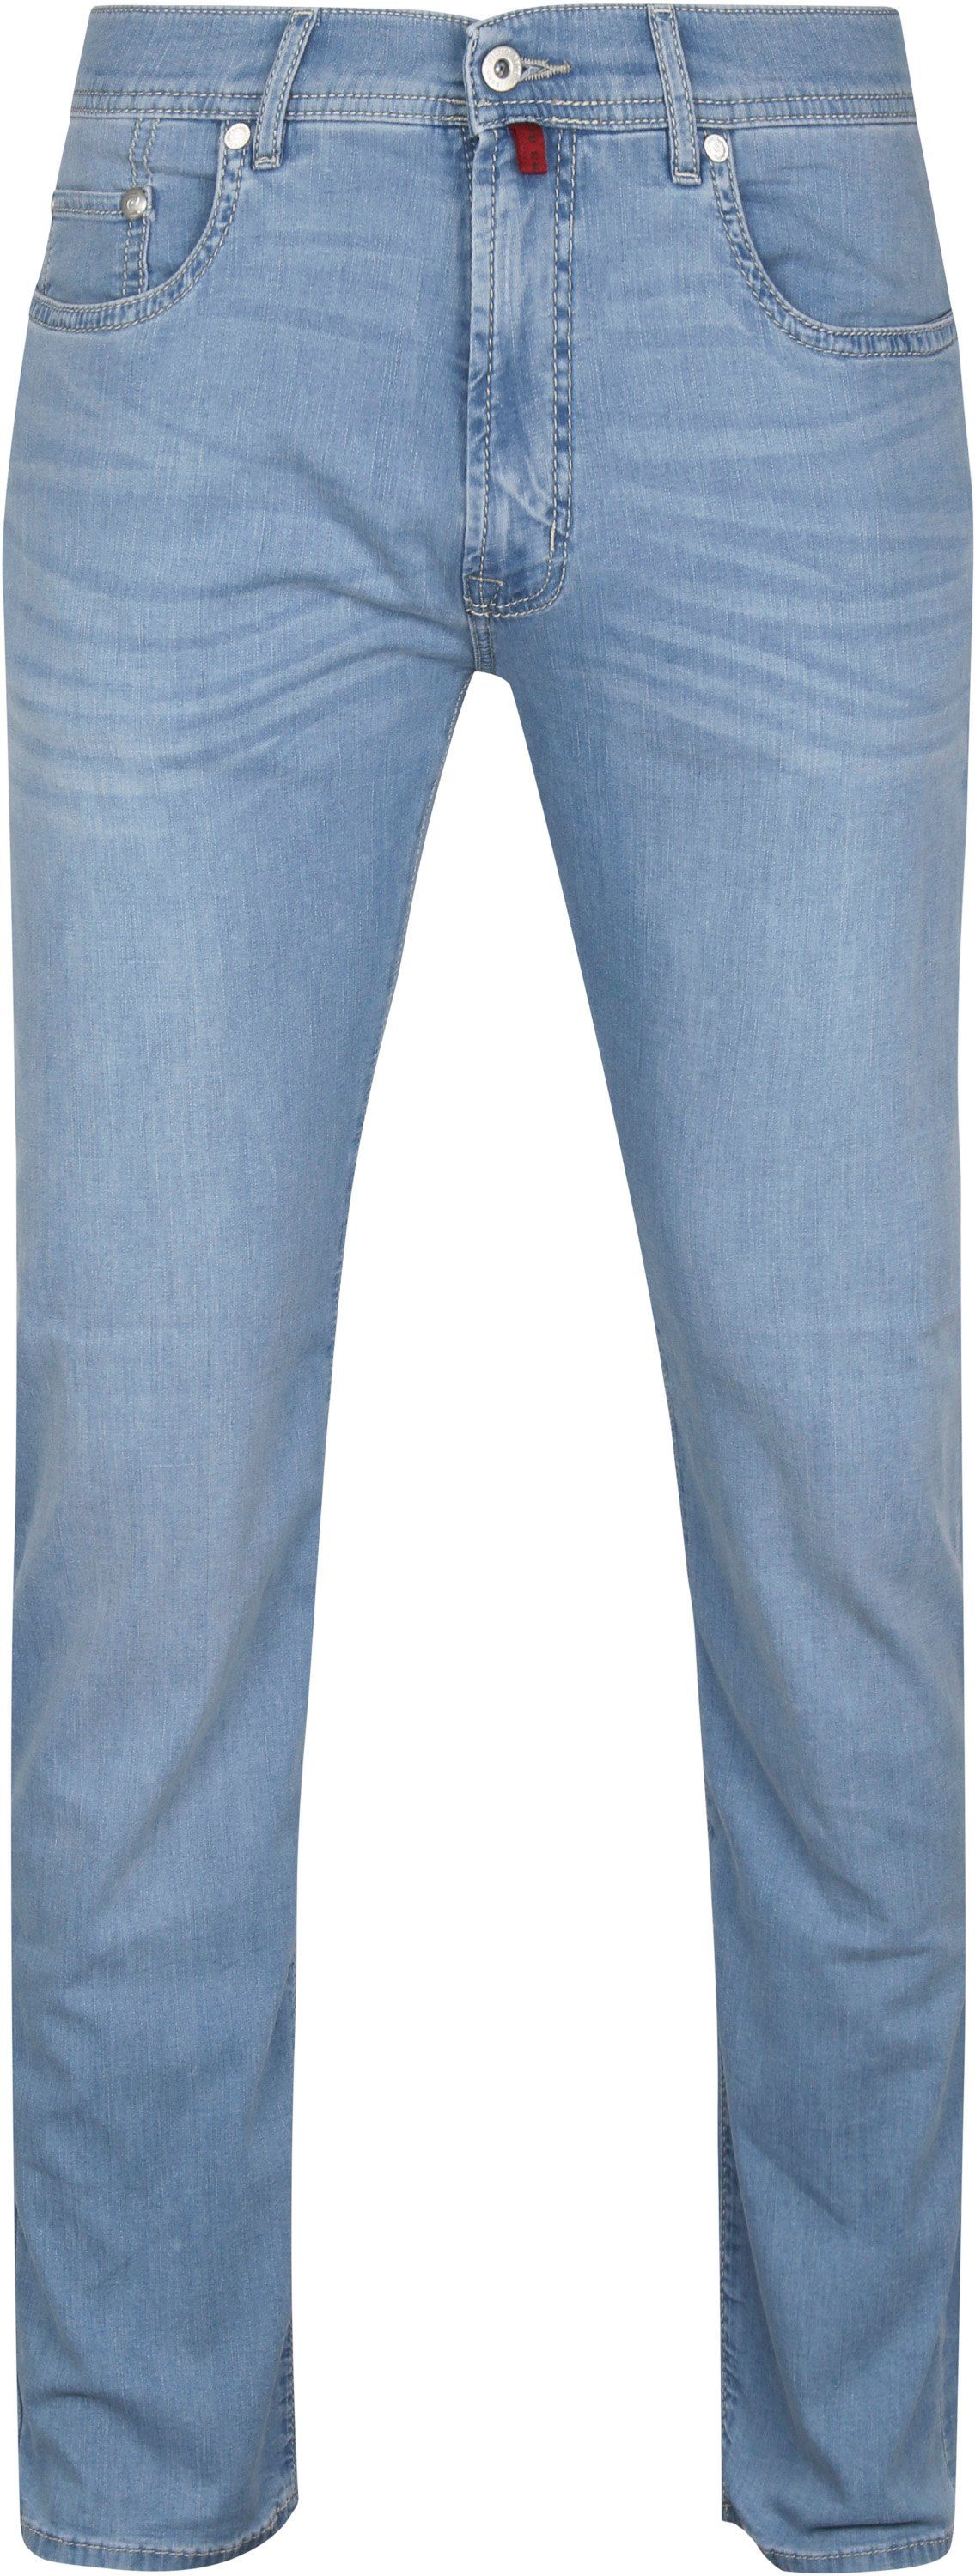 Pierre Cardin Jeans Lyon Future Flex Blue size W 32